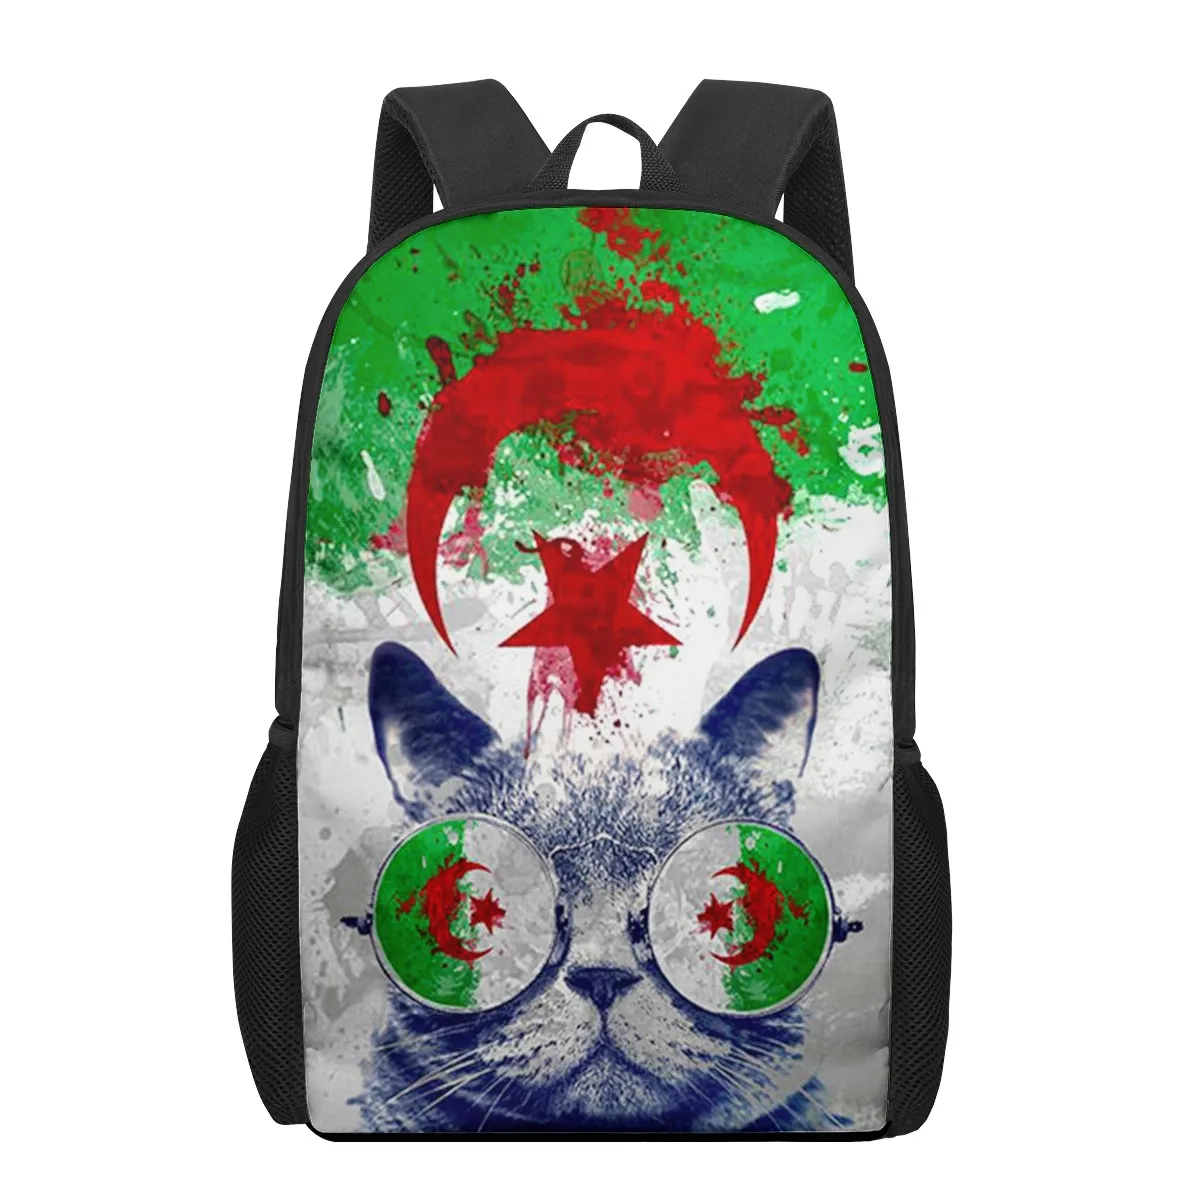 "Детский школьный портфель с флагом Алжира для малышей, детский рюкзак с принтом, школьная сумка на плечо для мальчиков и девочек, сумки для к..."